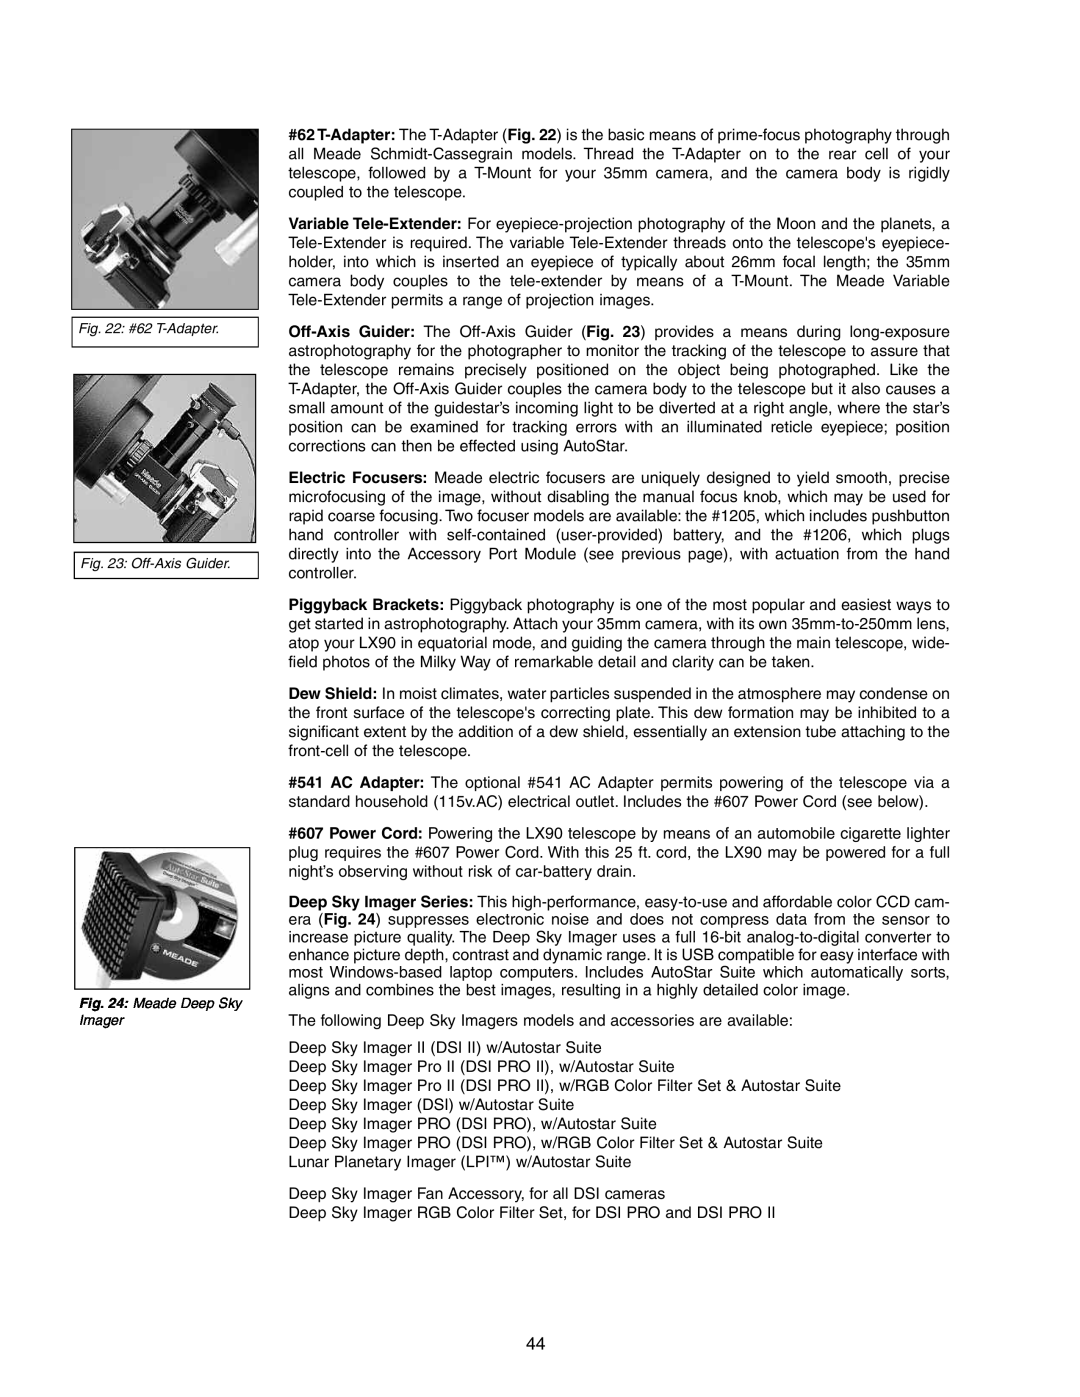 Meade LX90GPS instruction manual Deep Sky Imager II DSI II w/Autostar Suite 